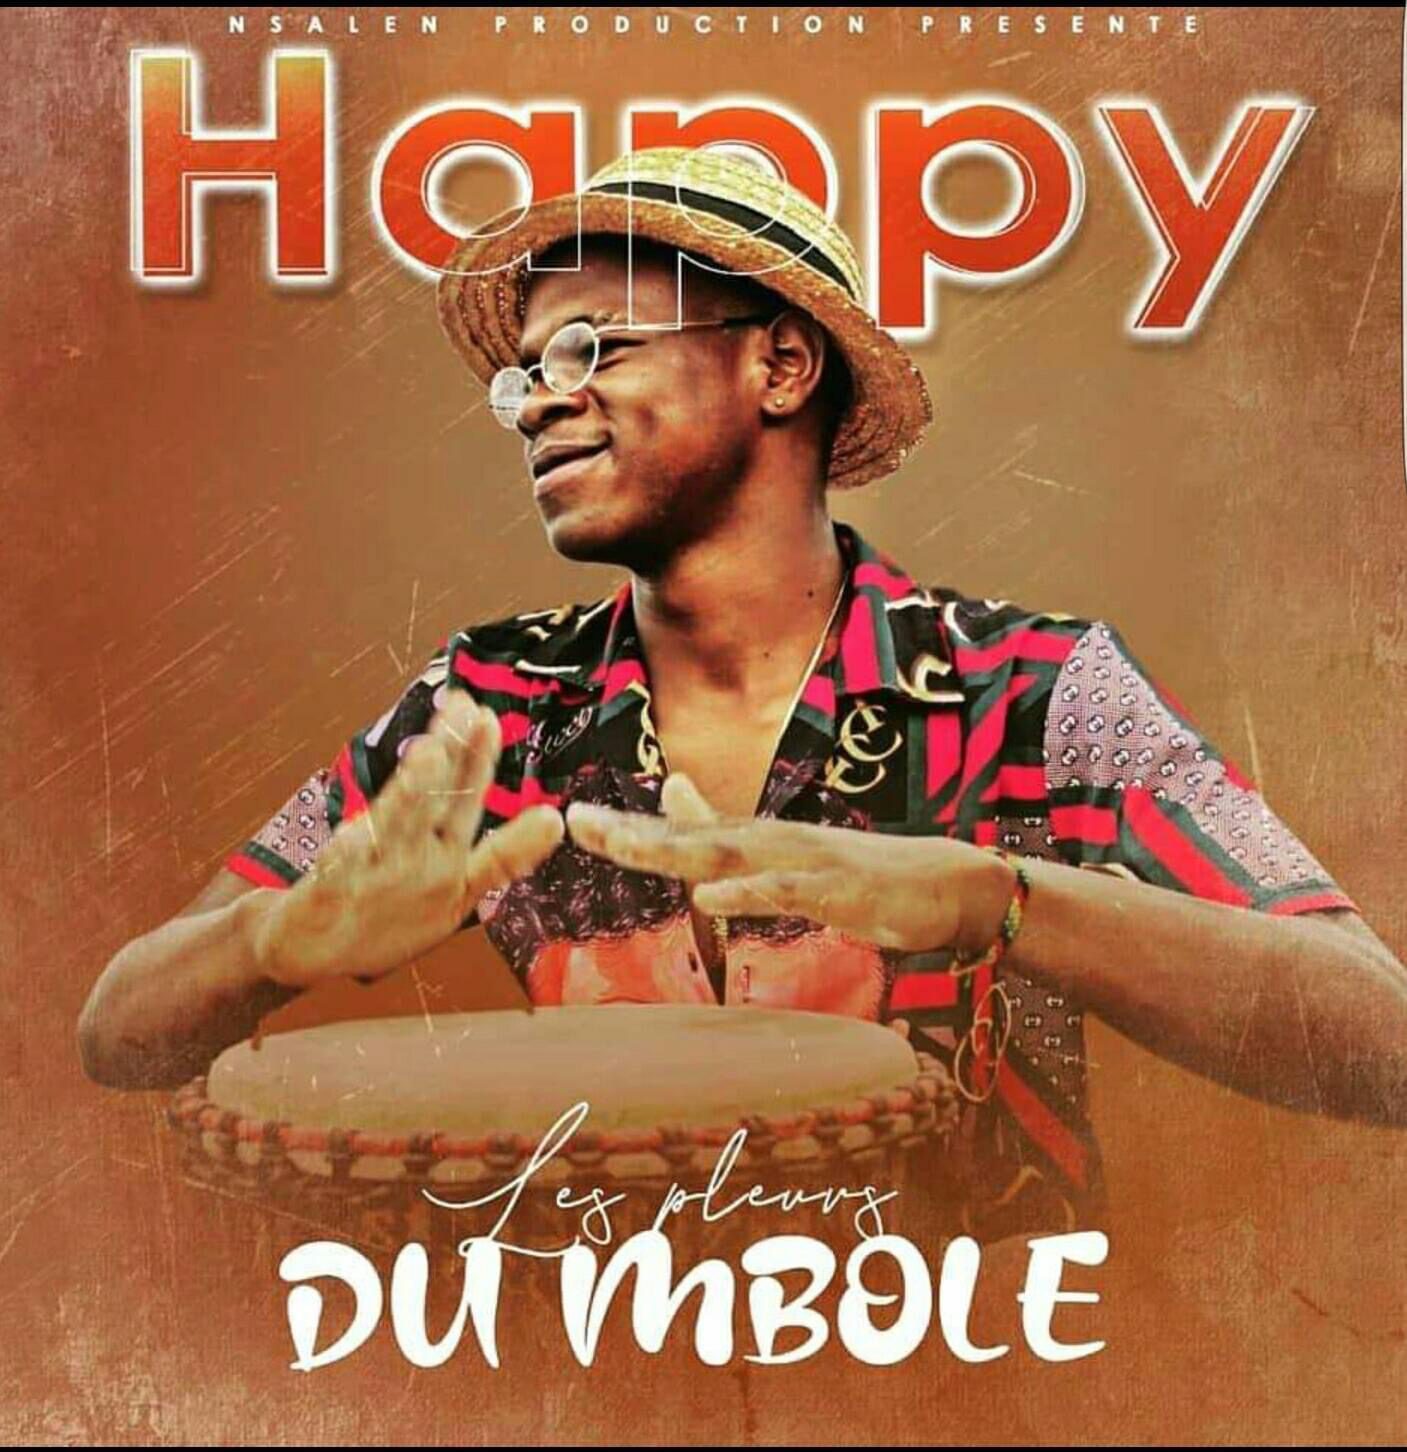 Happy - "La Joie Du Mbole"